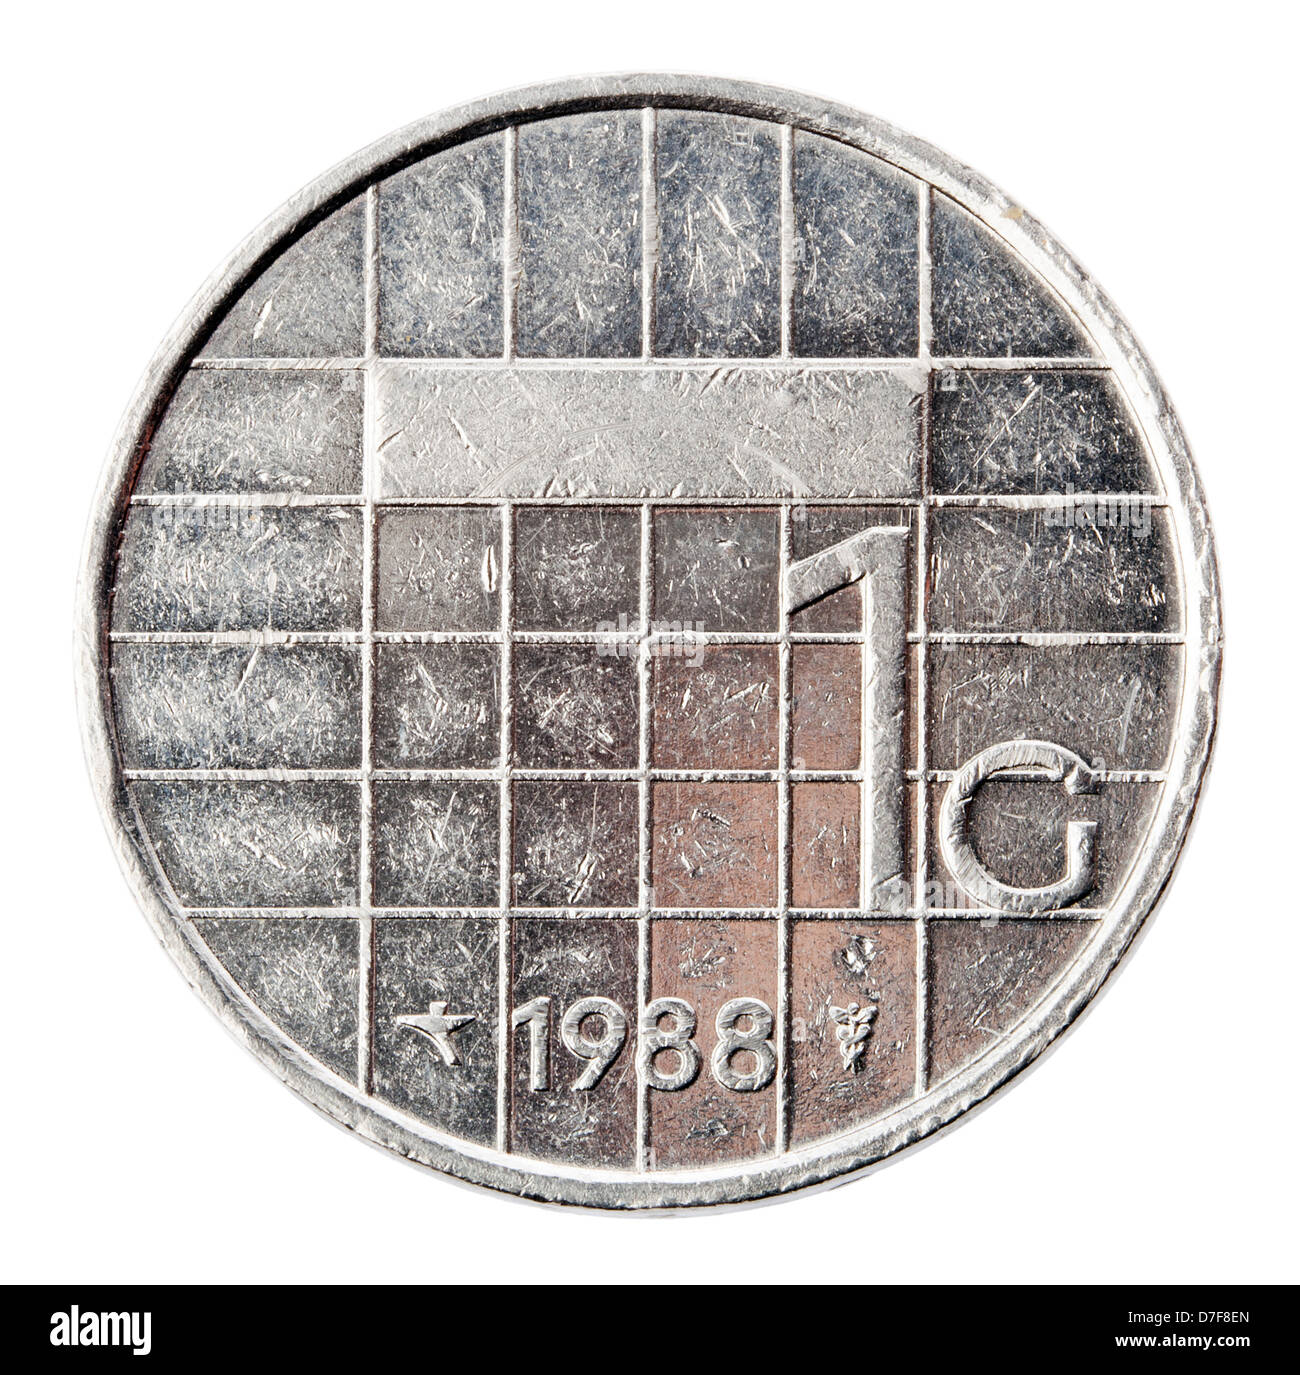 Frontaler Ansicht Rückseite (Tails) eine niederländische 1 Gulden (fl) Münze im Jahr 1988. Dargestellt ist die Münze Bezeichnung Jahr. Gulden war Stockfoto